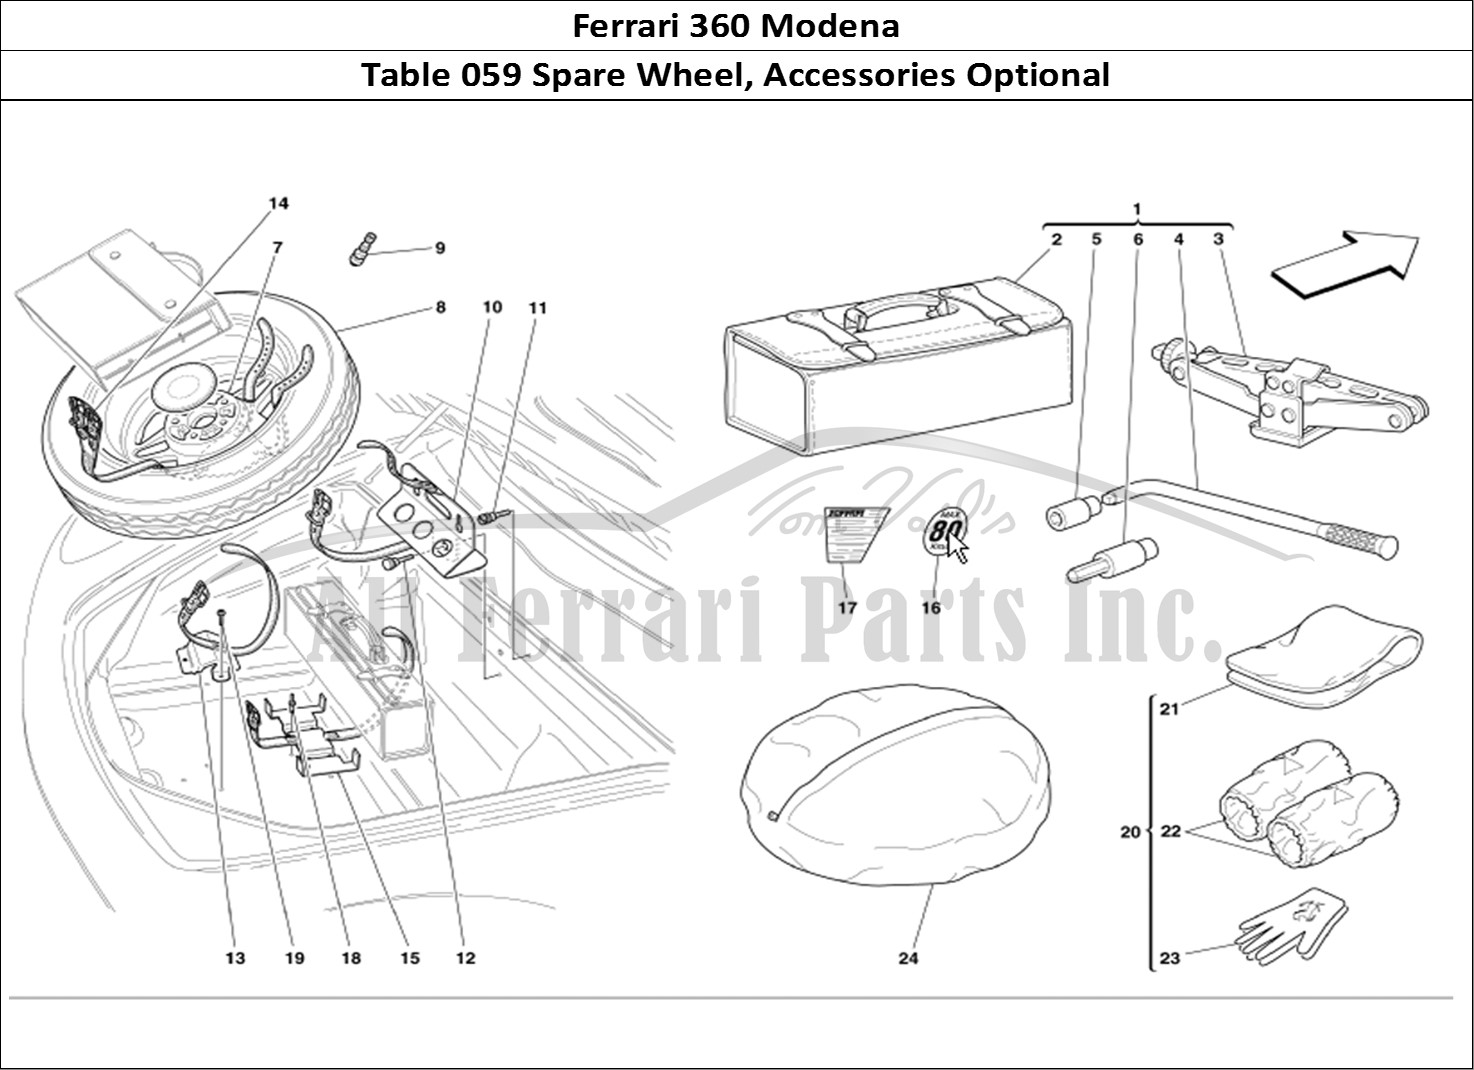 Ferrari Parts Ferrari 360 Modena Page 059 Spare Wheel and Equipment